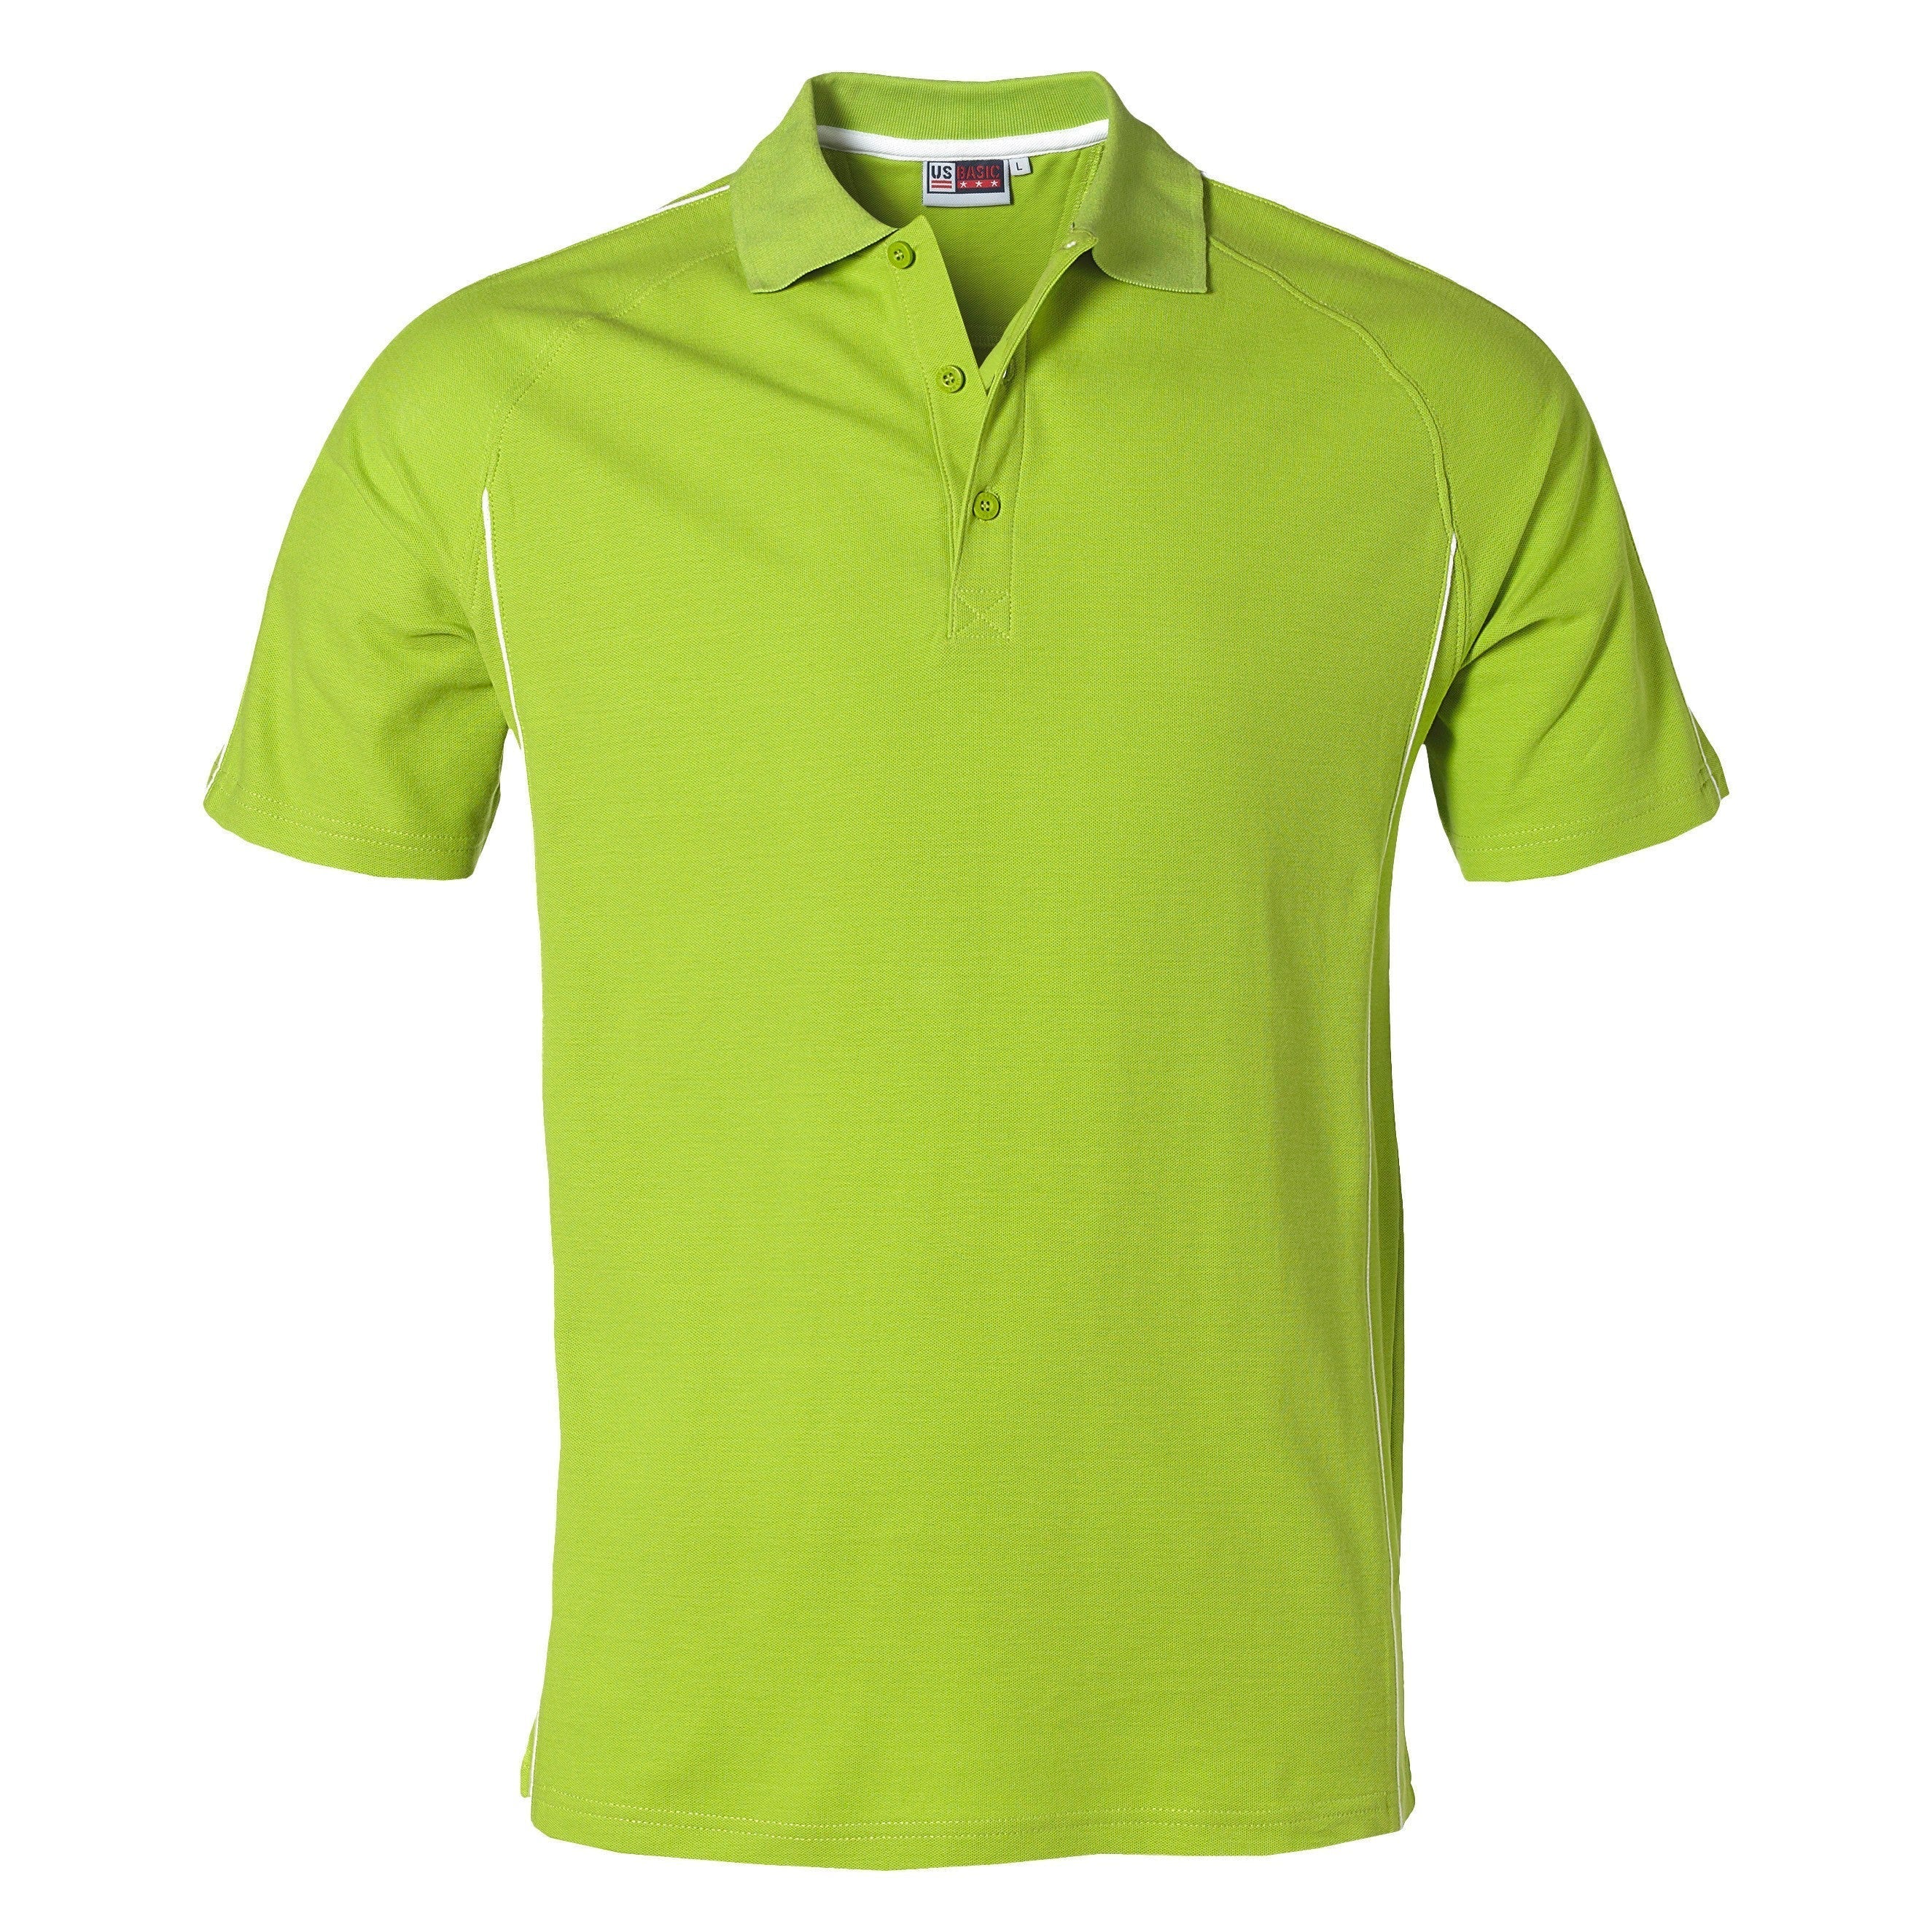 Mens Pontiac Golf Shirt - Lime Only-2XL-Lime-L